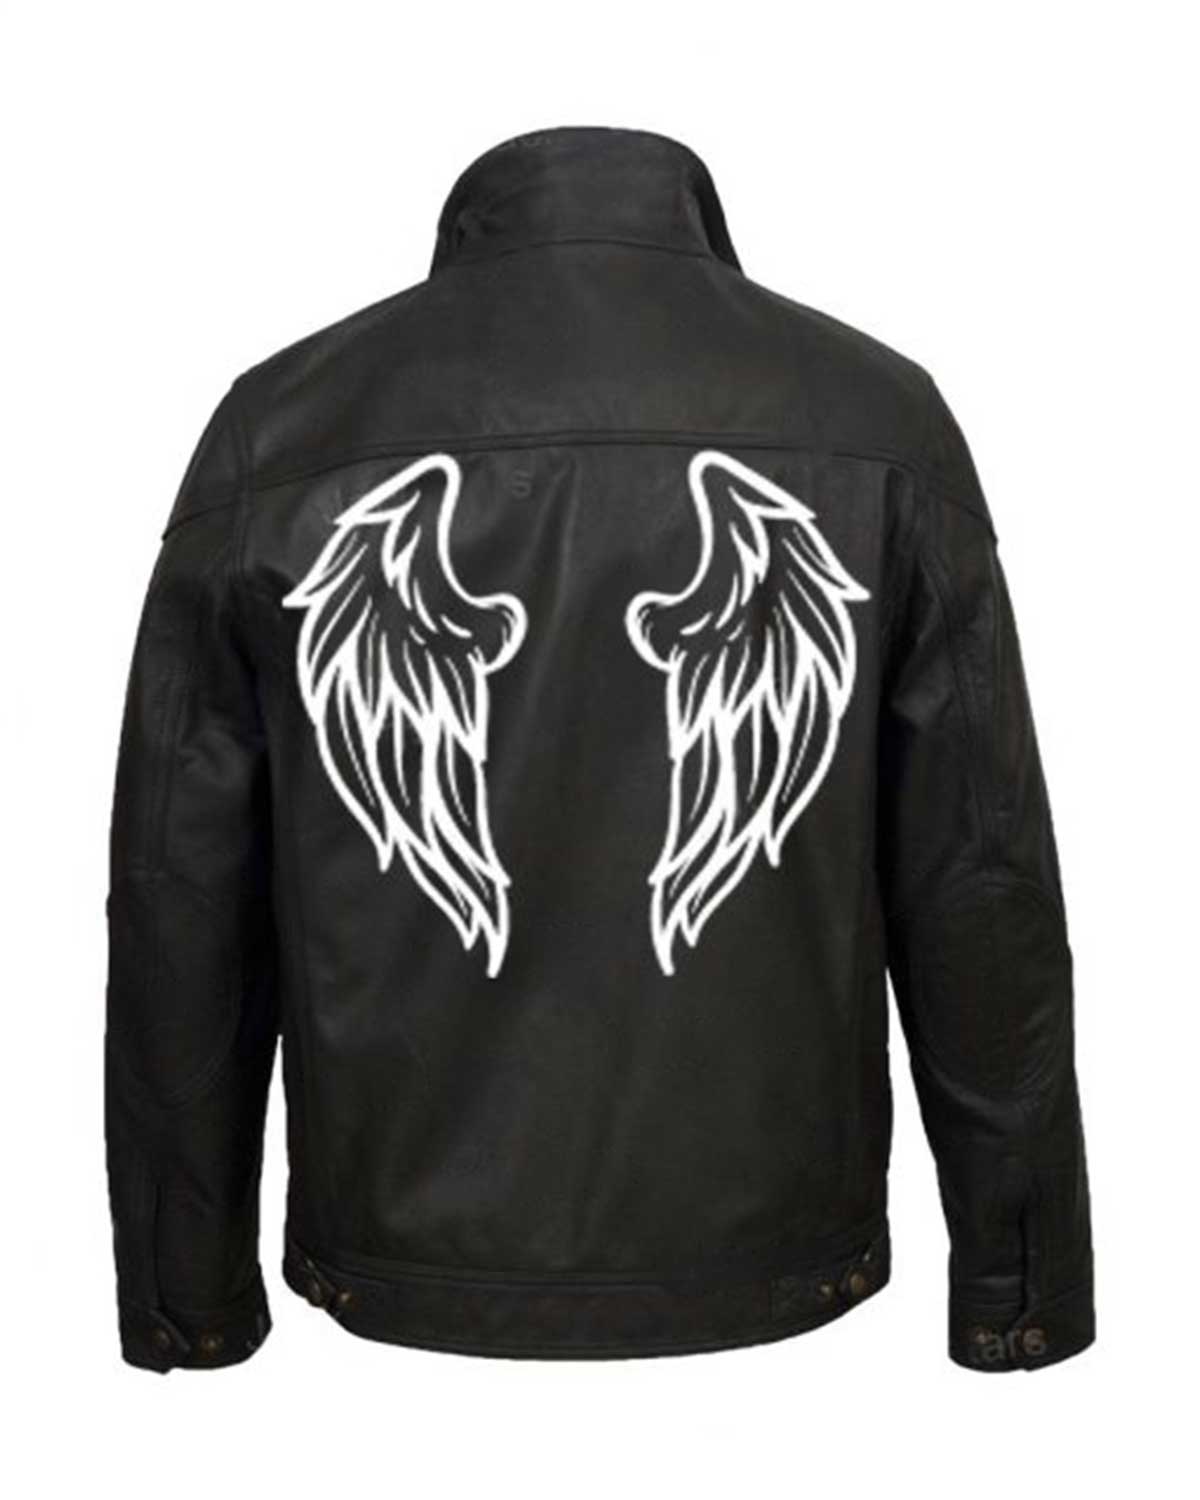 Elite Halloween Black Wings Printed Leather Jacket